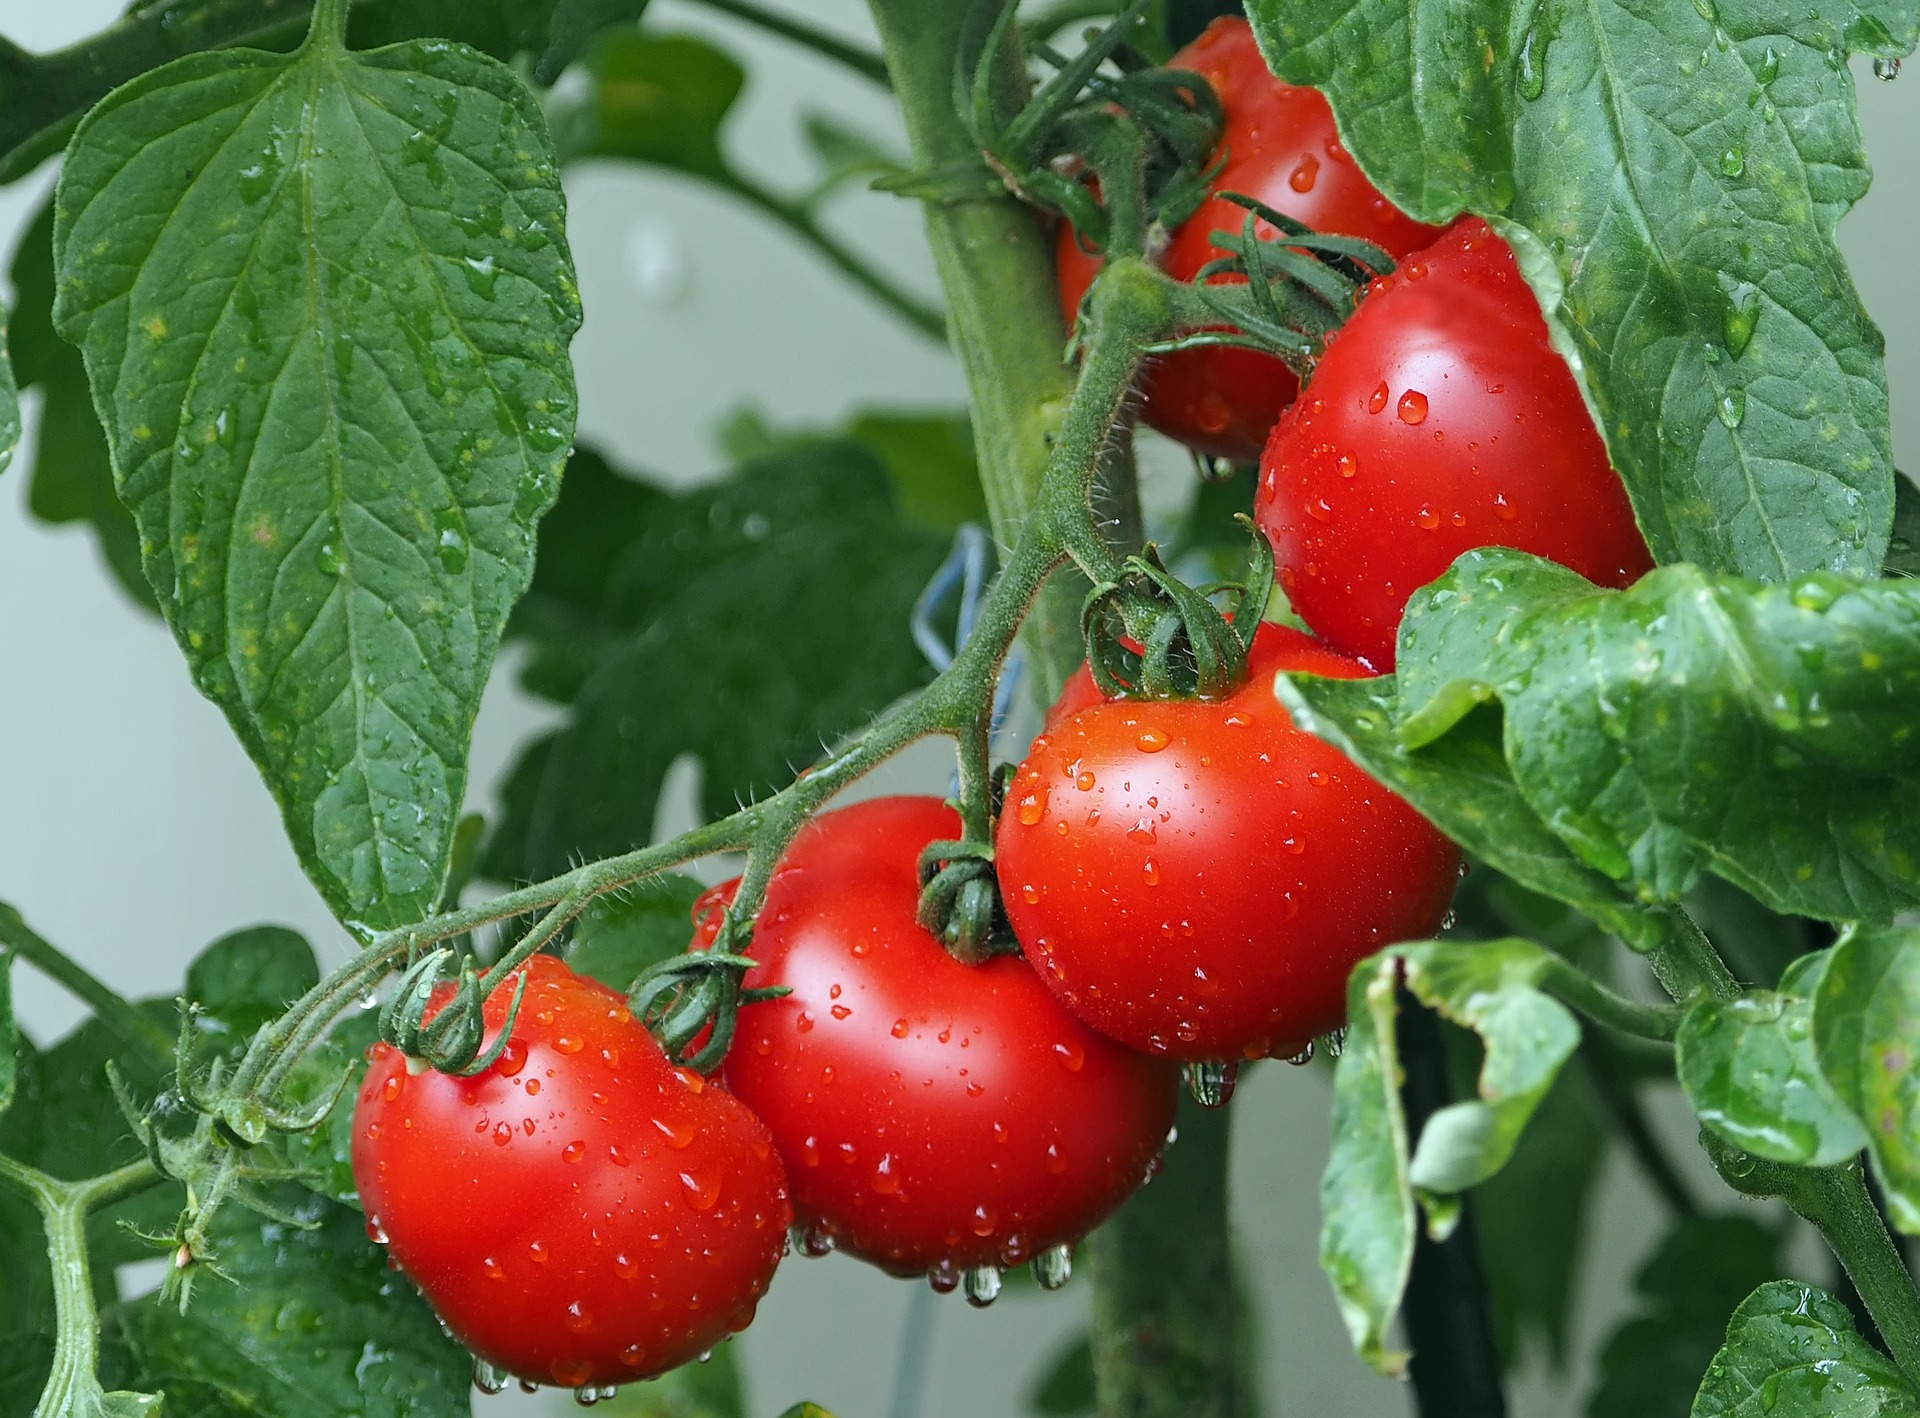 Tinh trùng có thể cải thiện bằng hợp chất có trong cà chua. Ảnh: Pixabay